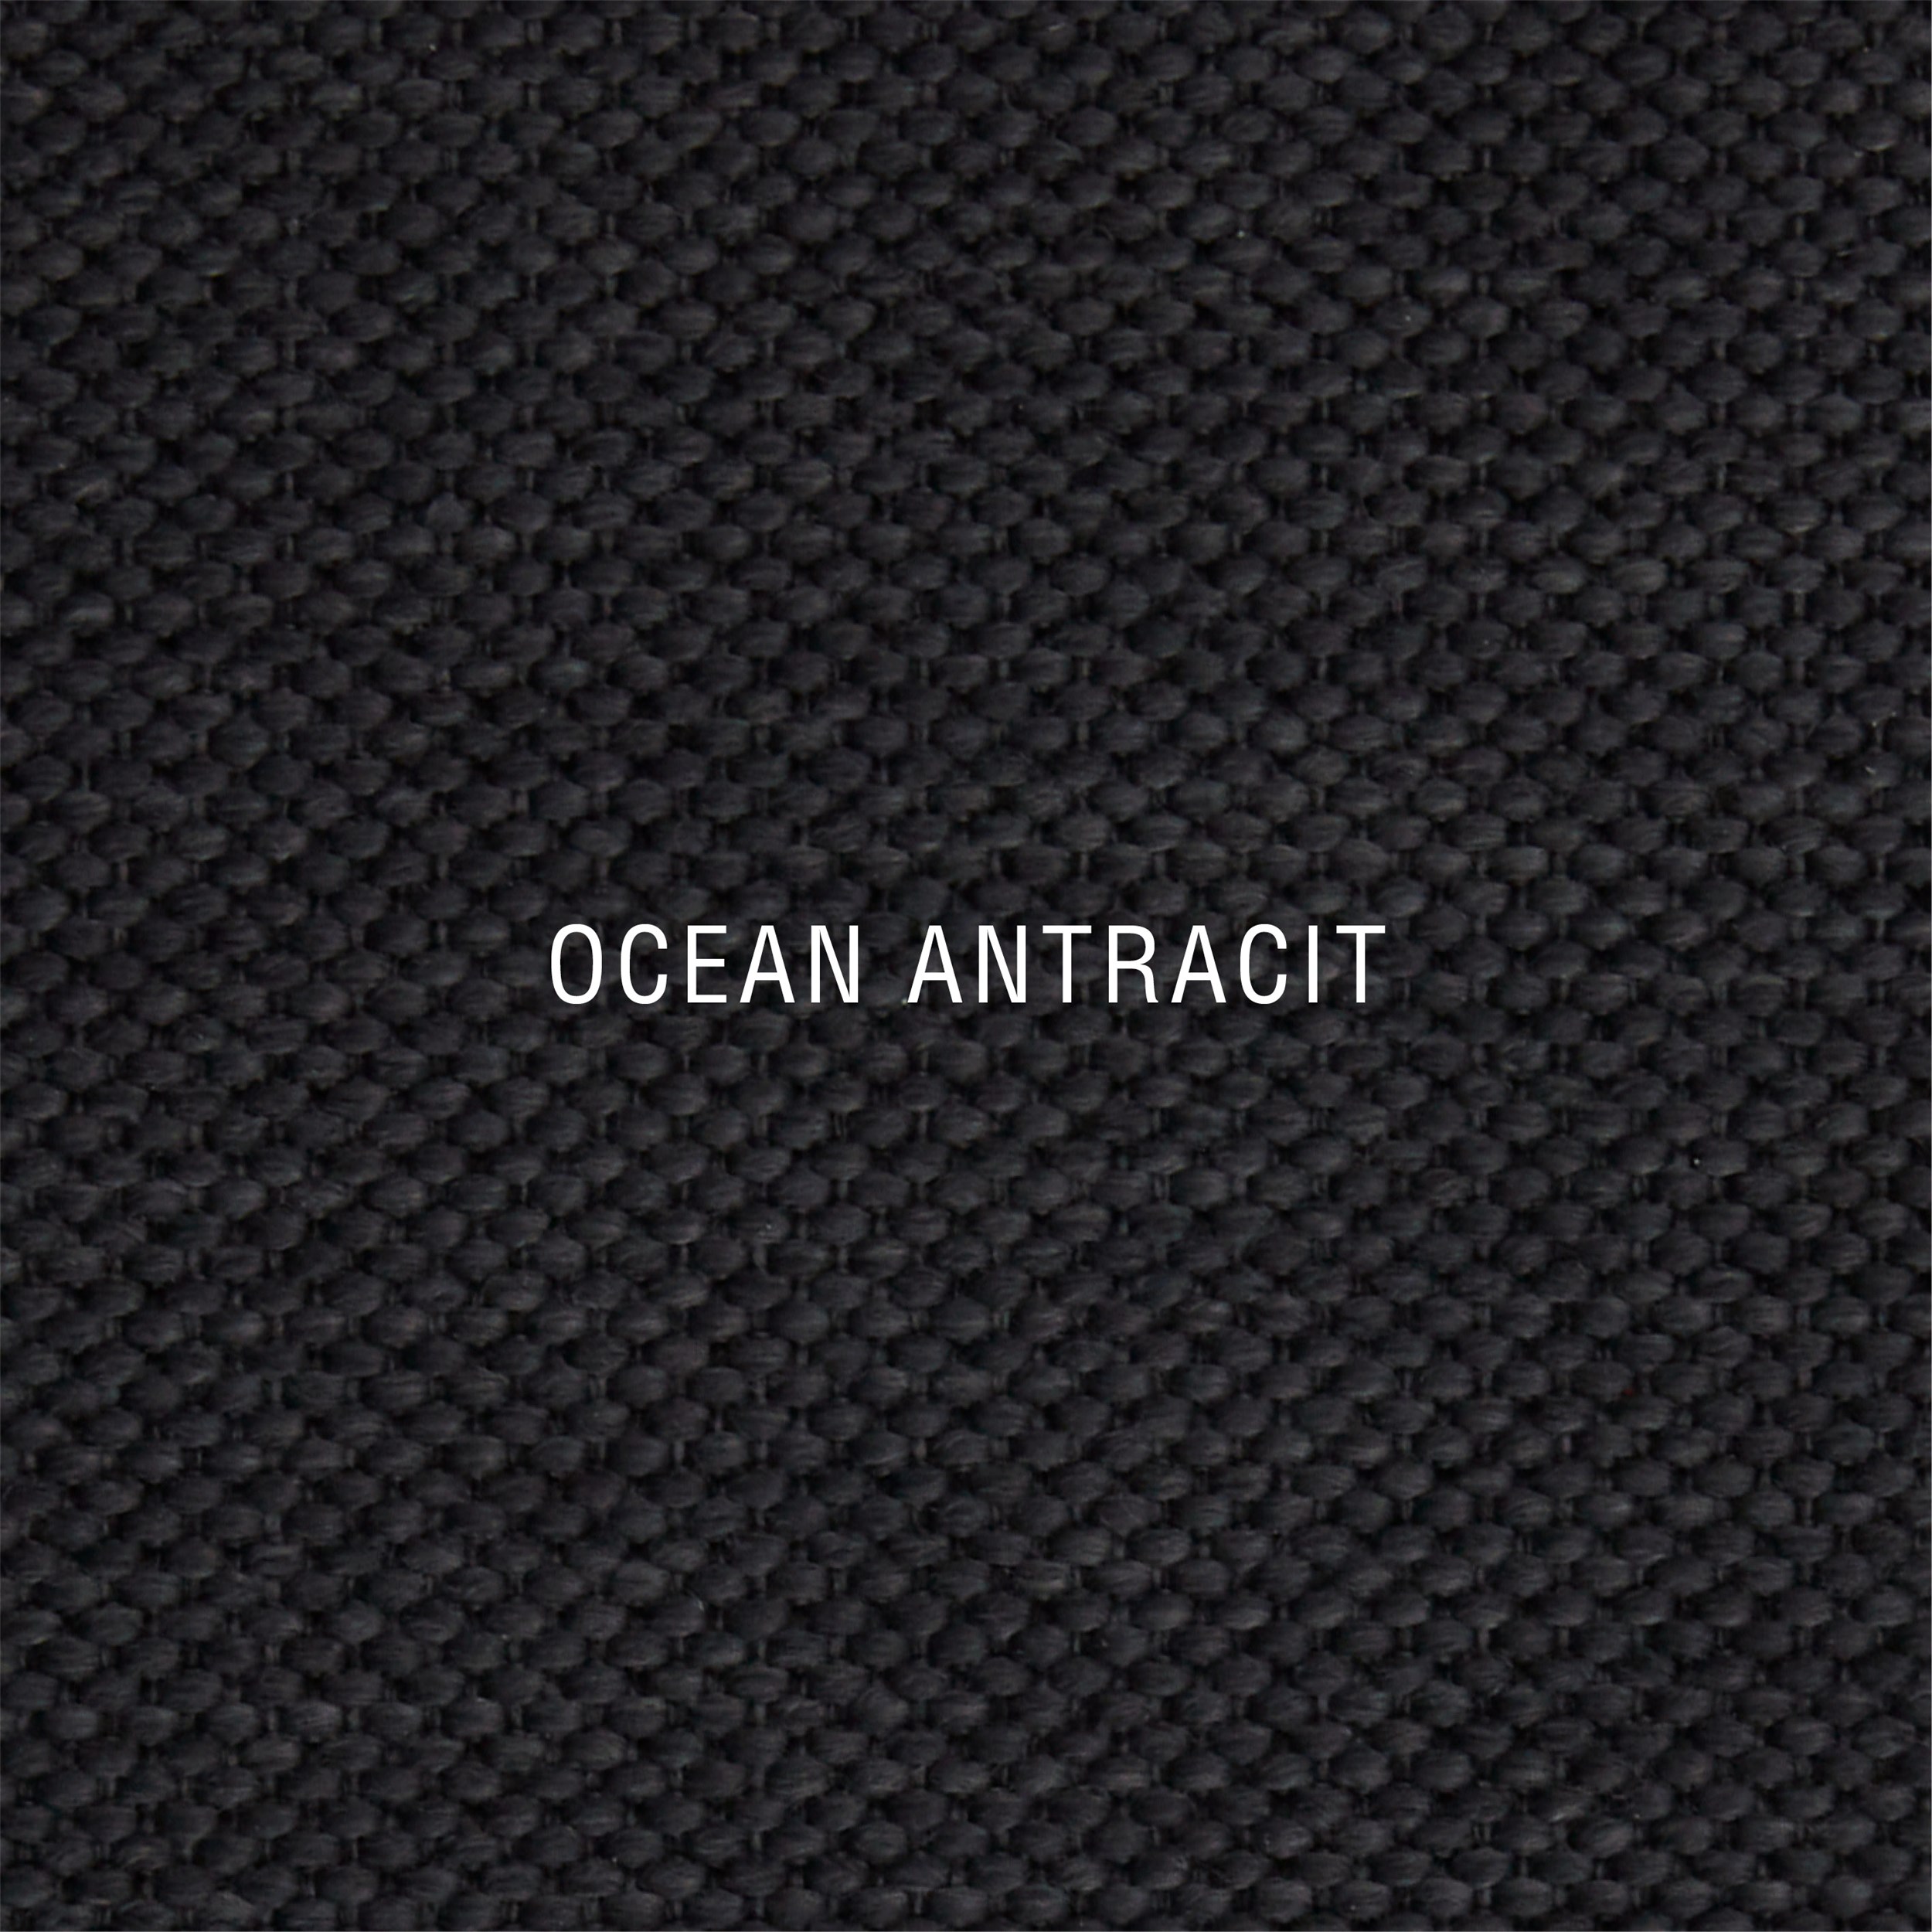 Nocturne Exclusive Ocean Inkl. 8 cm Exclusive topmadras, 210 x 210 cm kontinentalseng